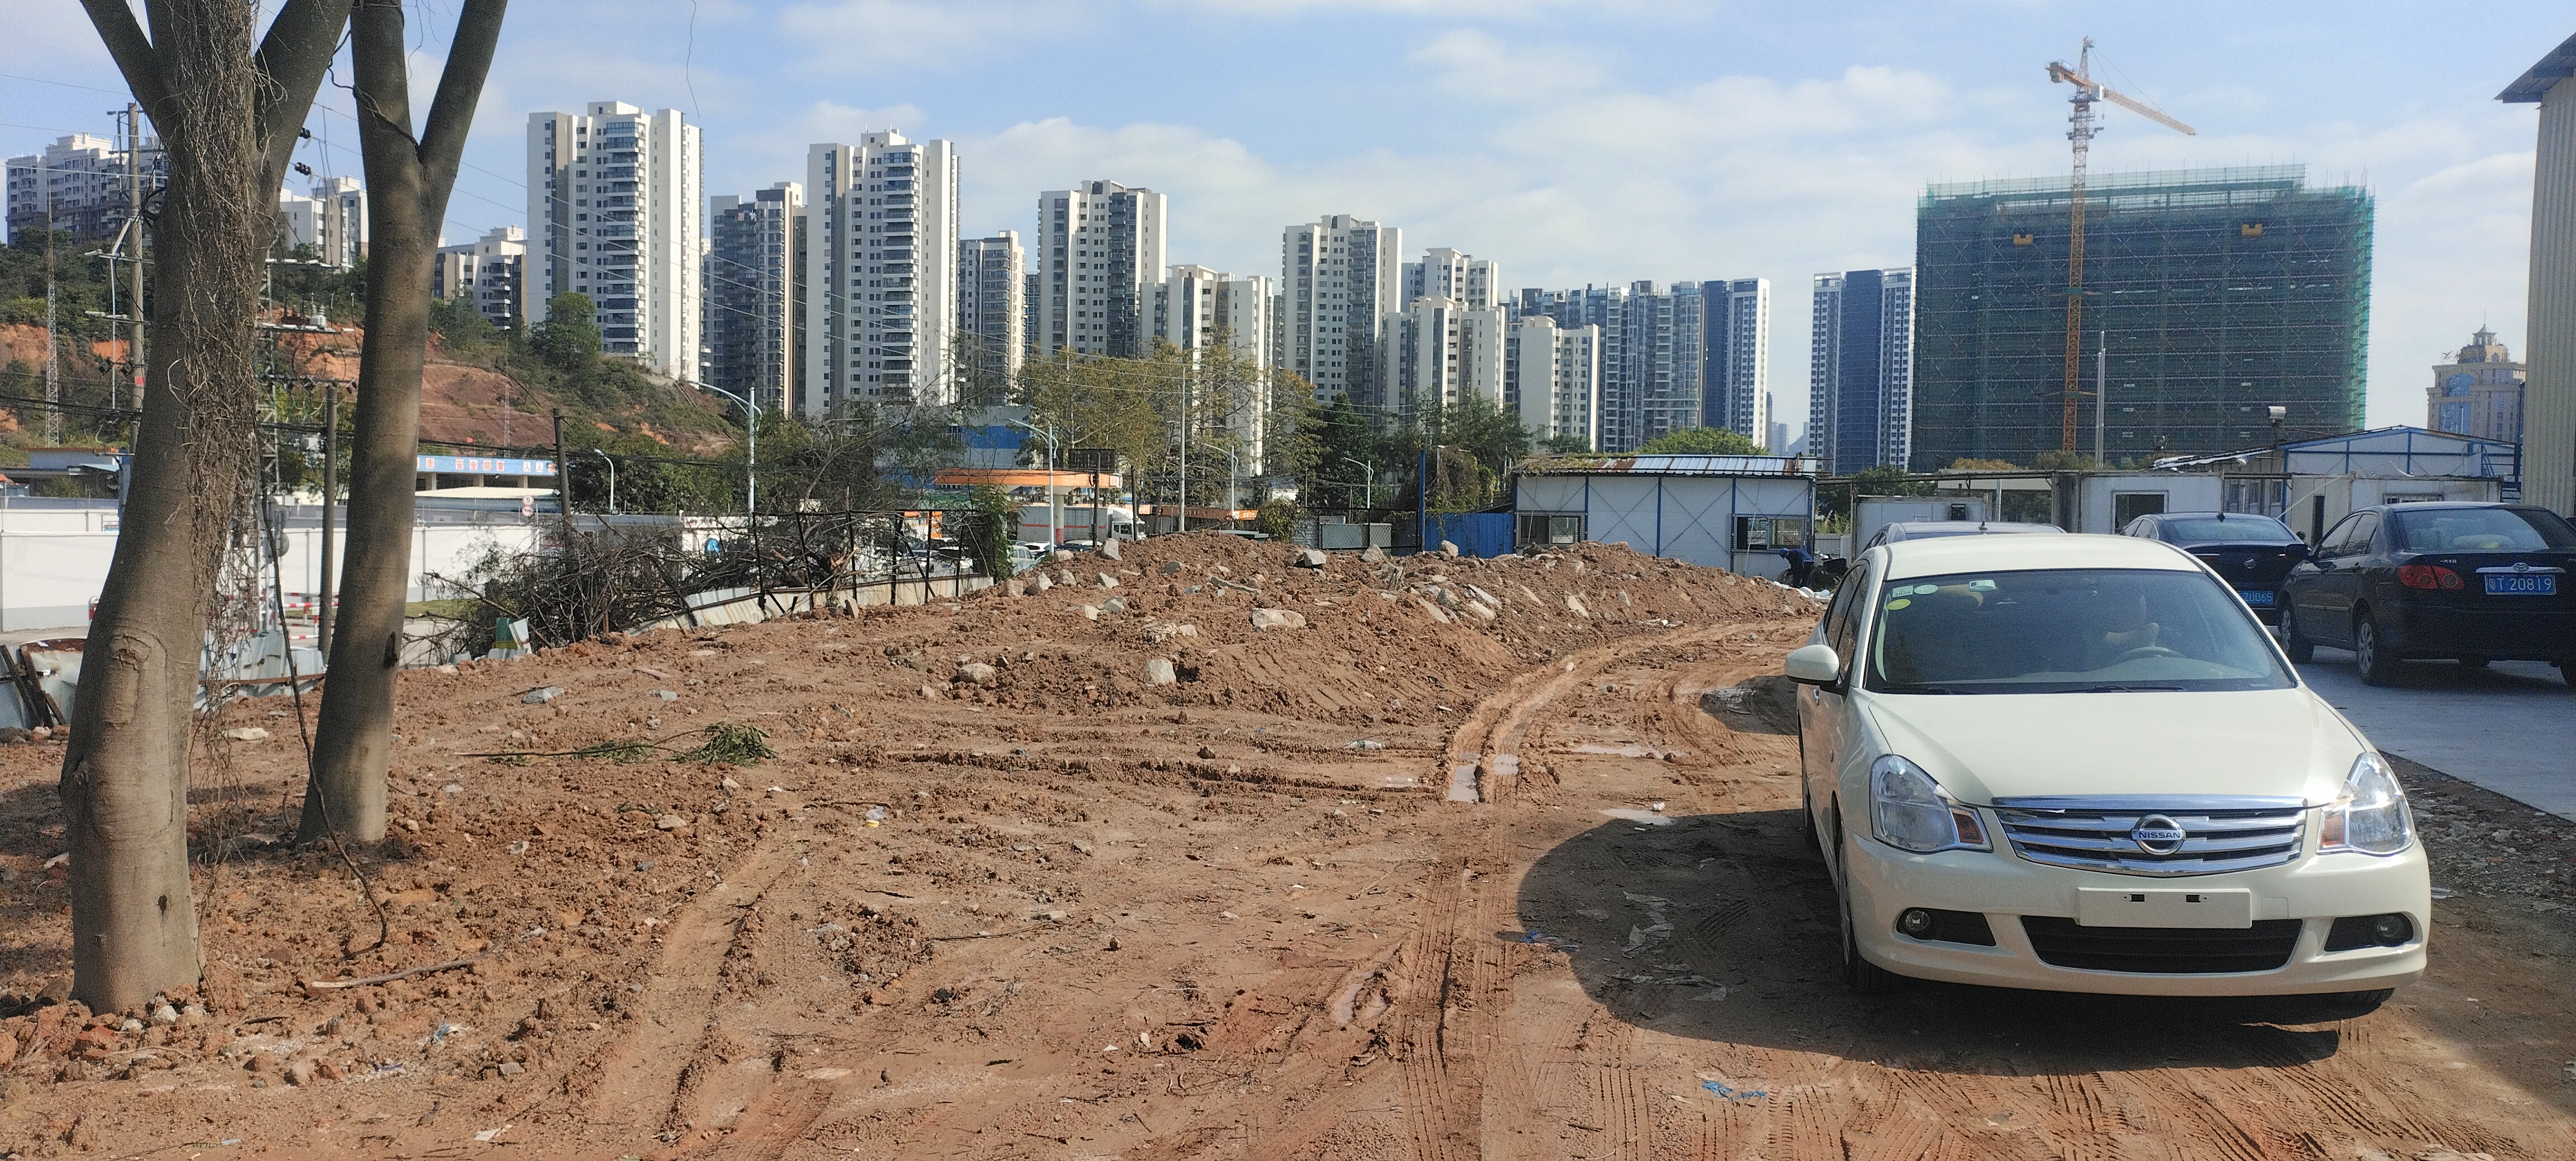 广东省广州市万顷沙国道旁新出50亩工业用地